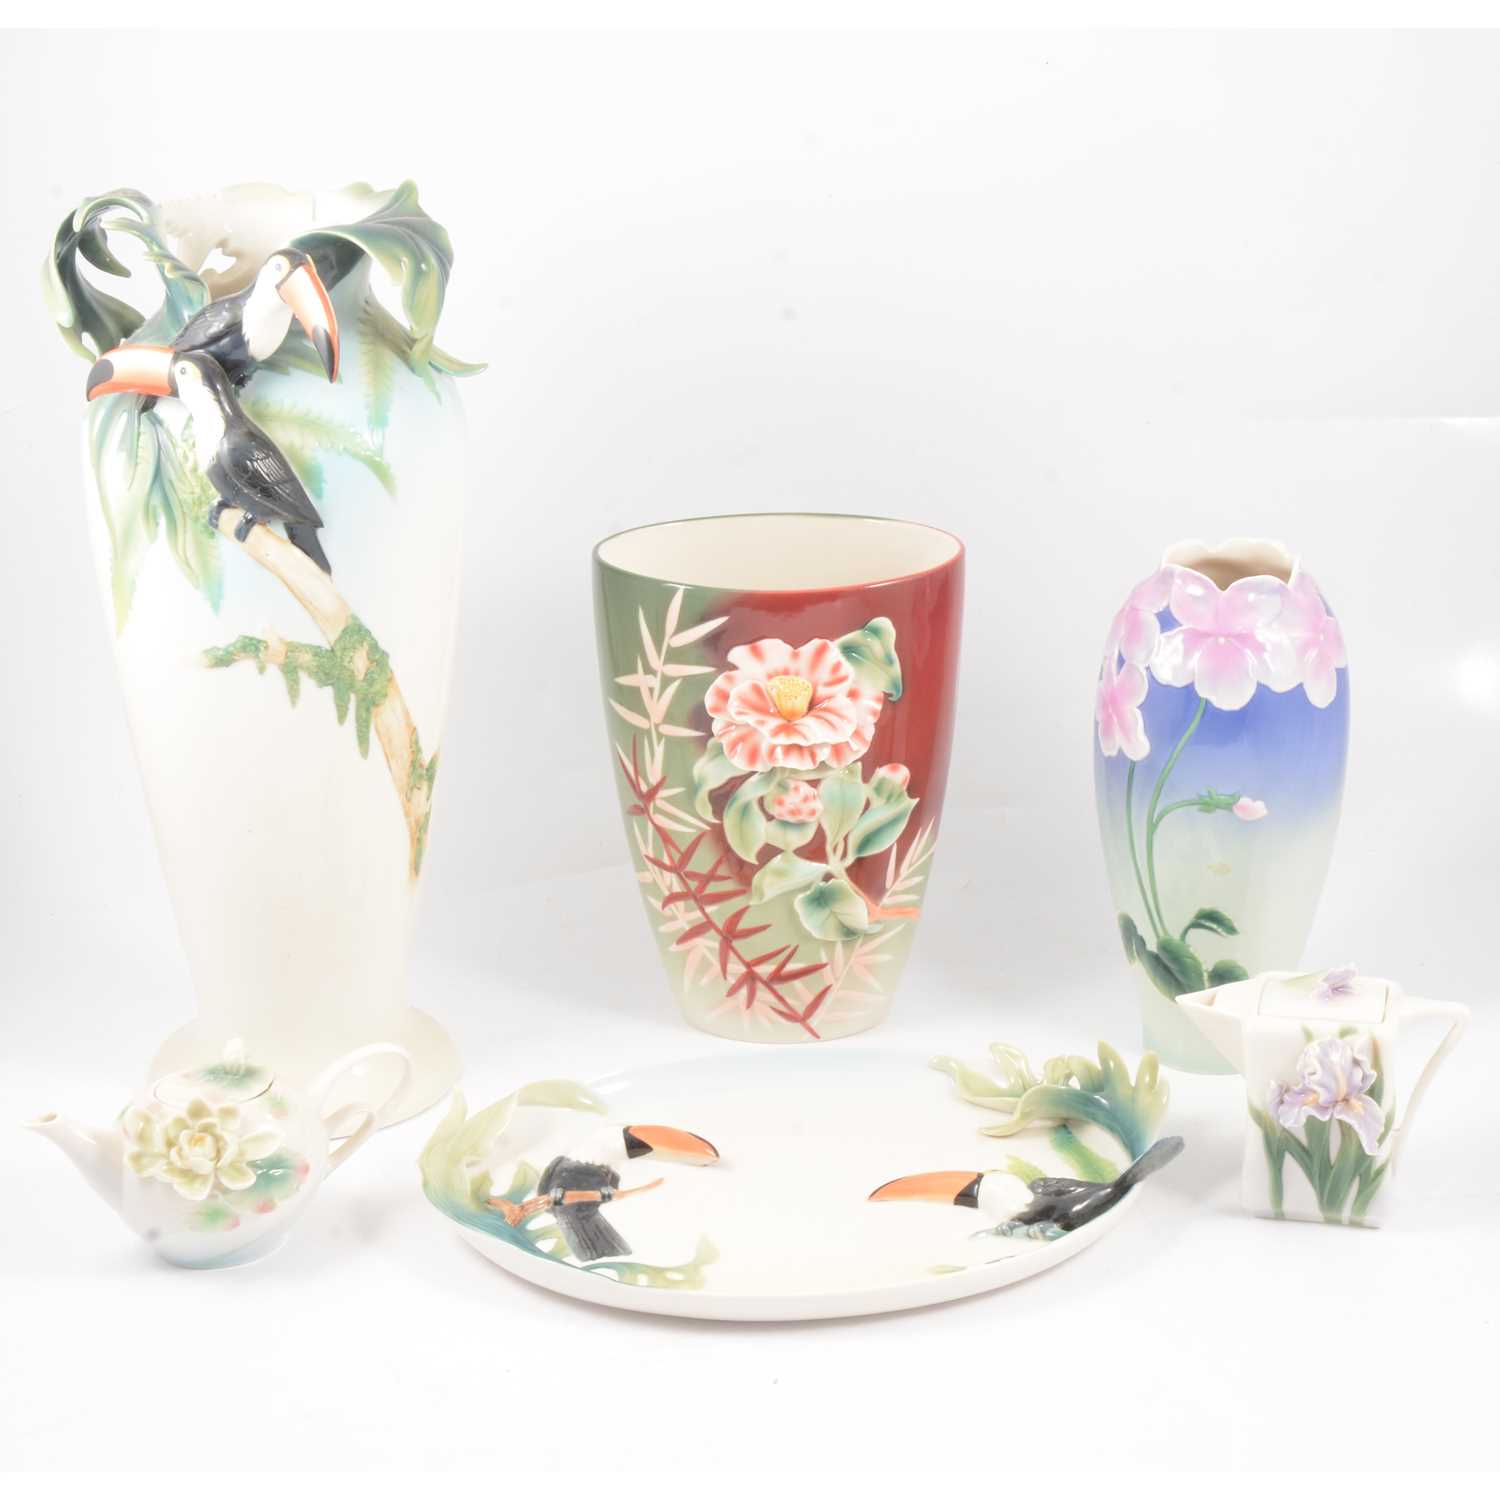 Lot 1 - Franz porcelain Tucan vase, dish and four floral pieces.